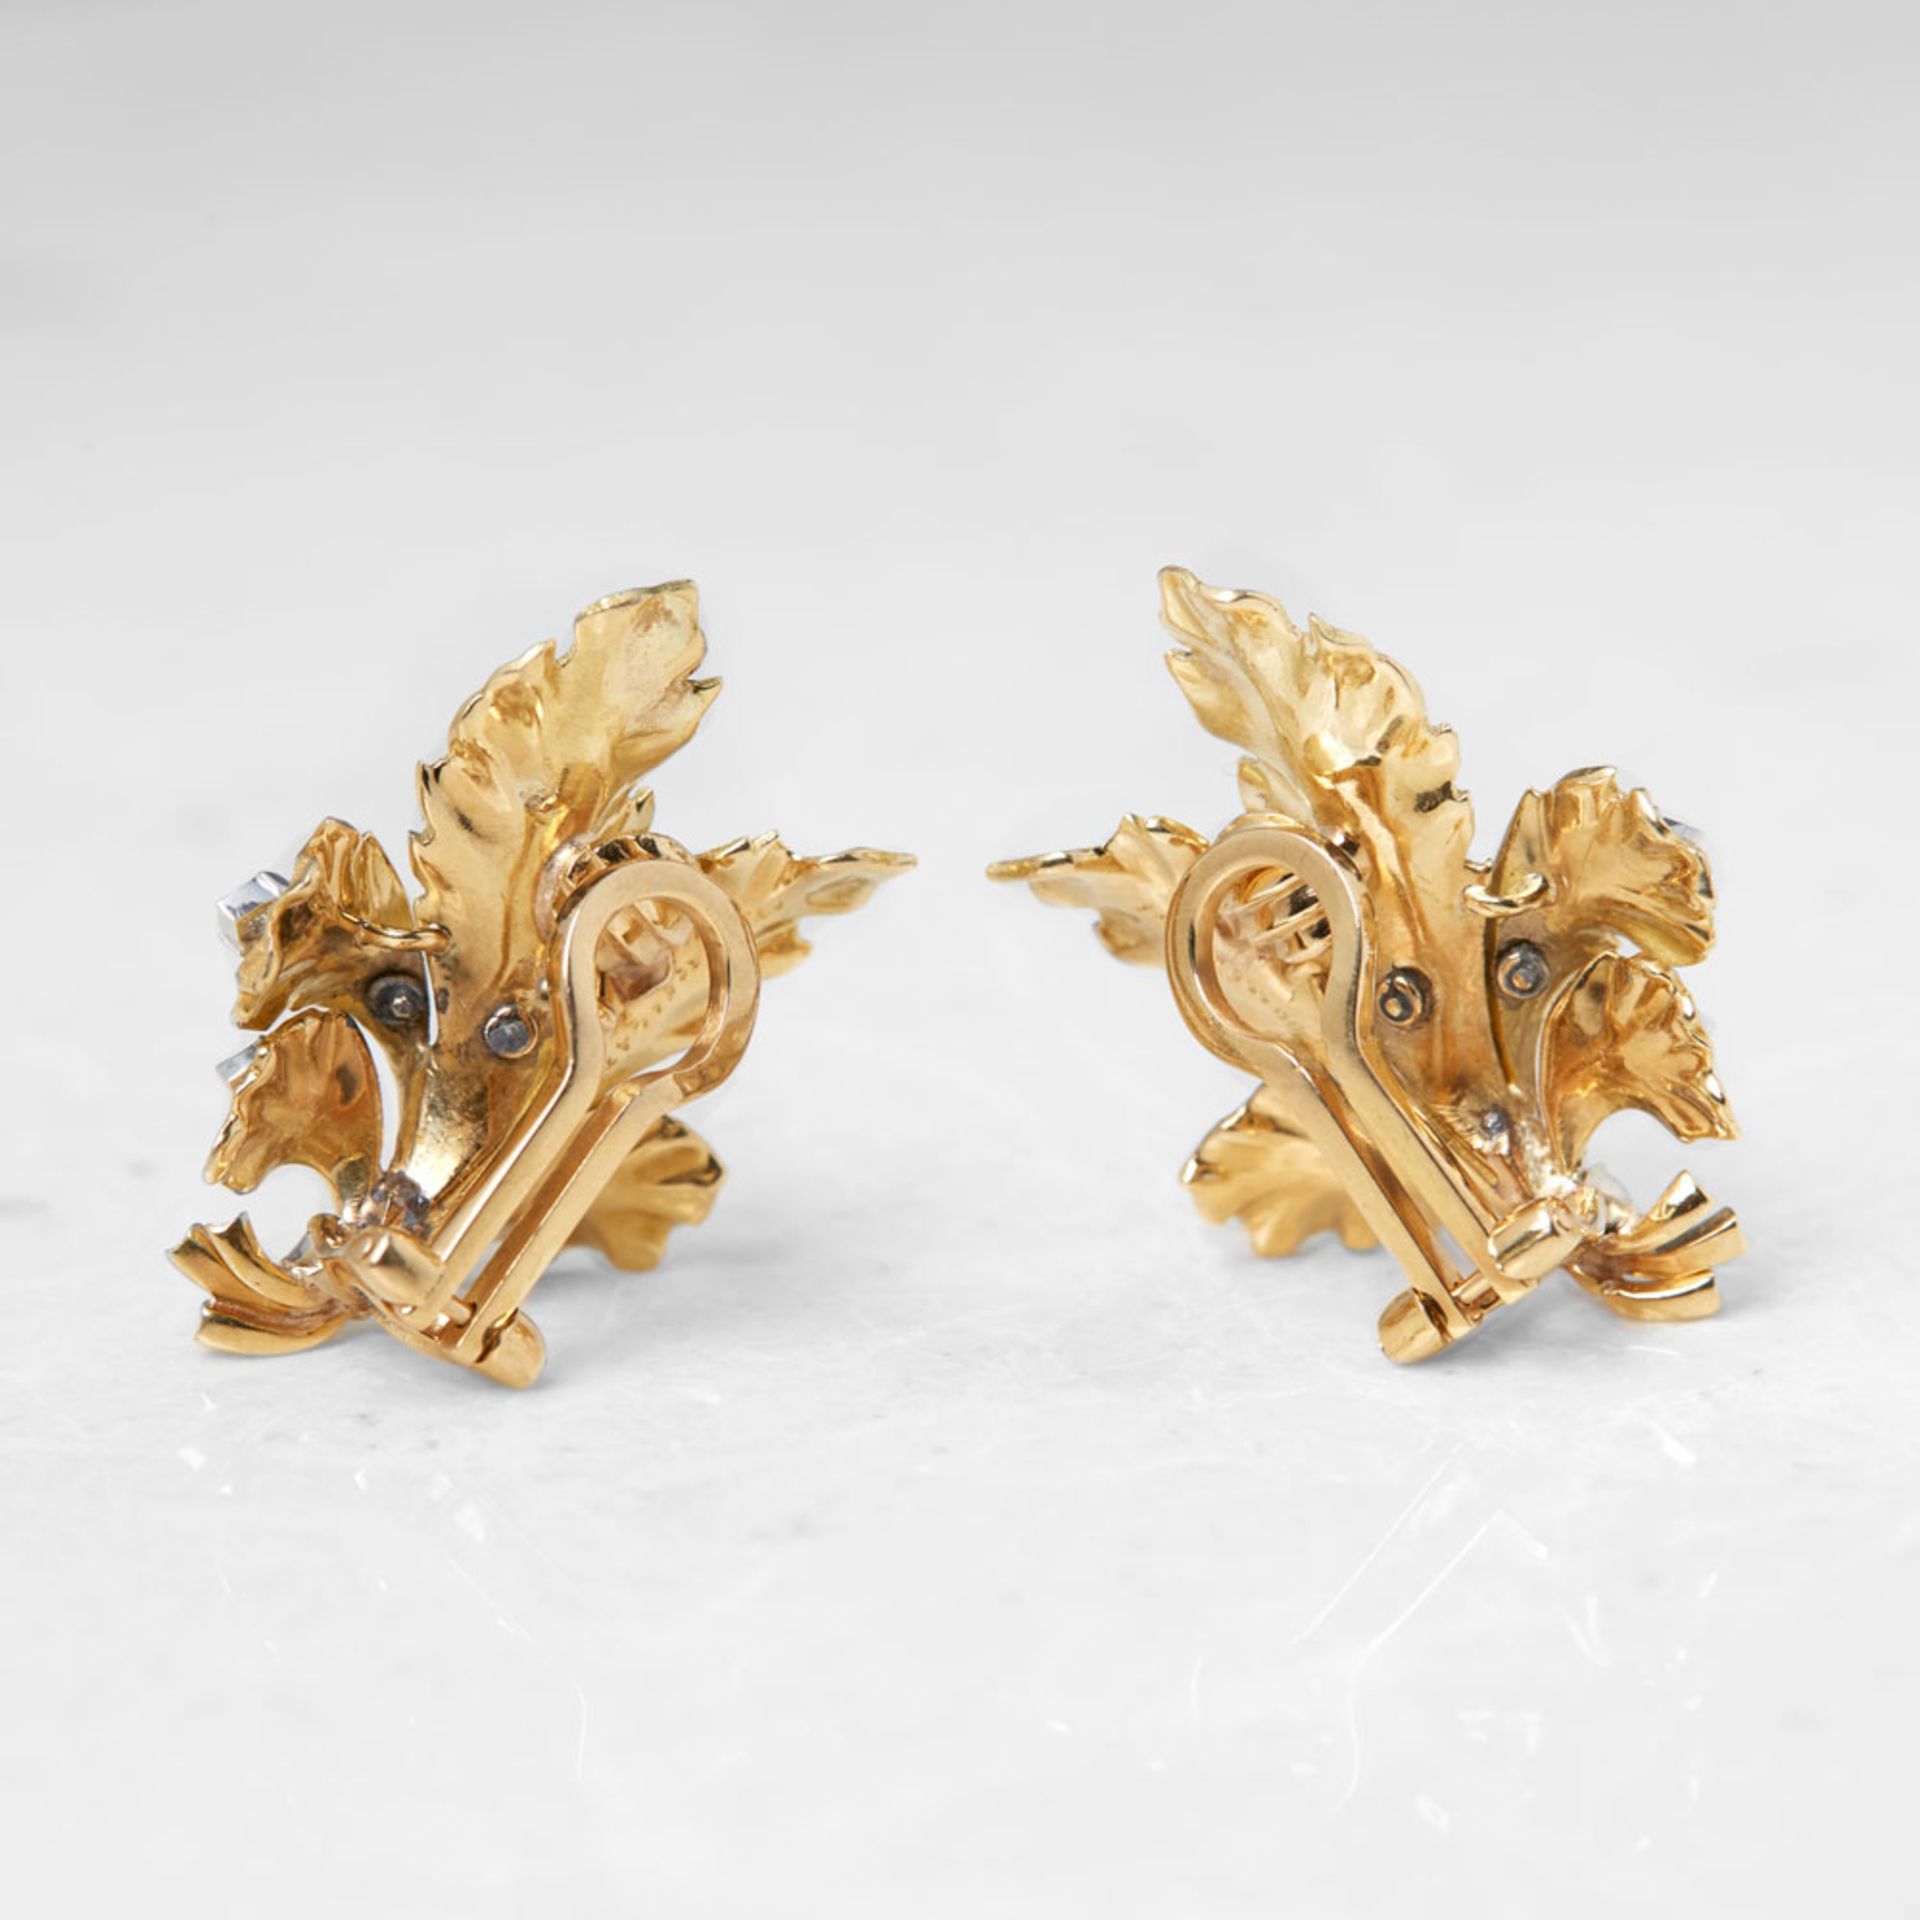 Buccellati 18k Yellow Gold 0.50ct Diamond Leaf Design Earrings - Image 4 of 7